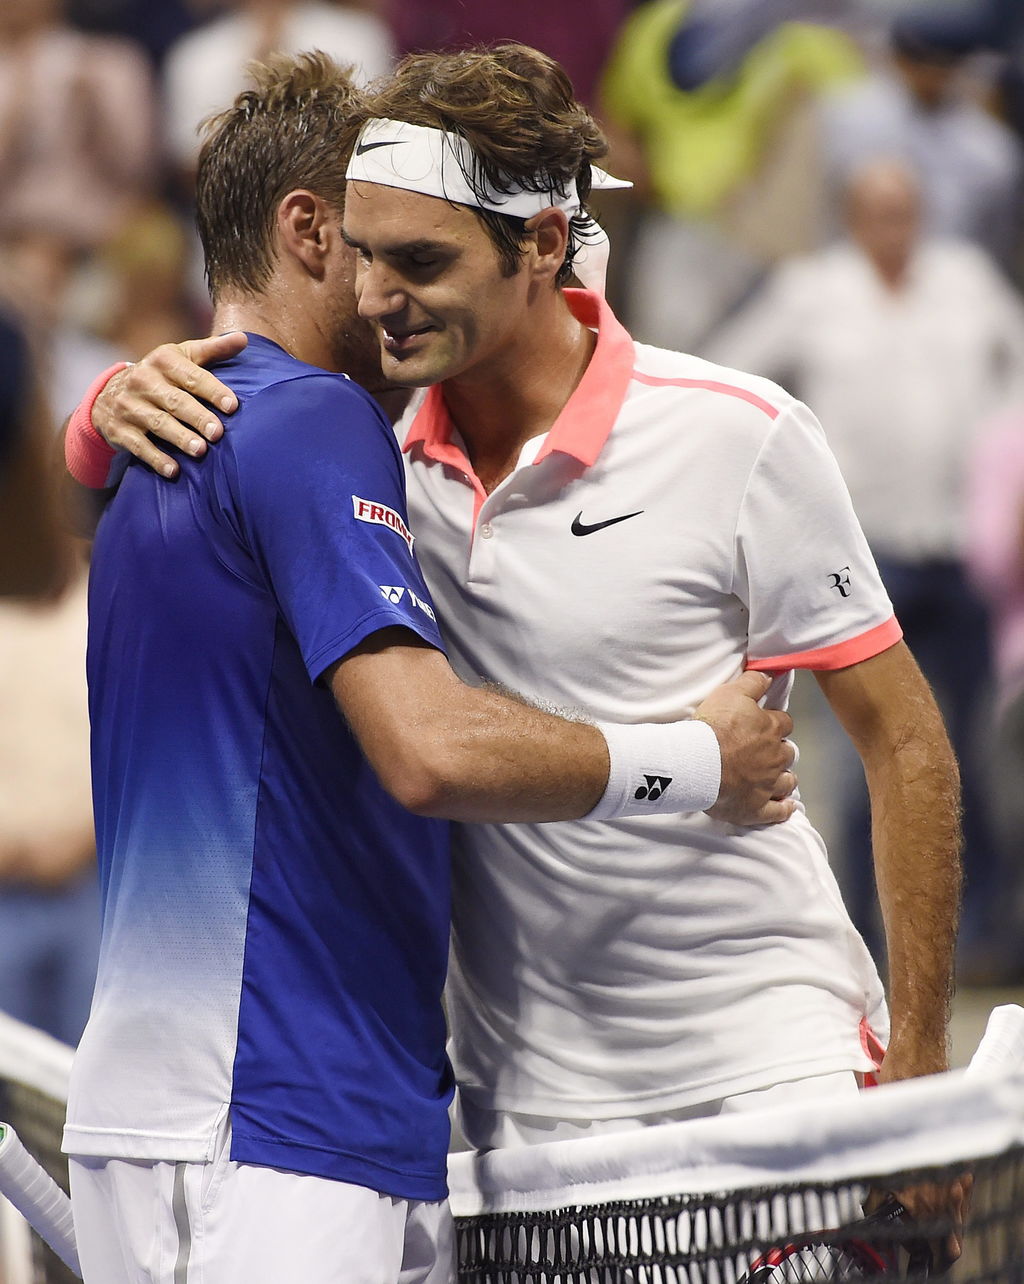 El duelo de tenistas suizos en las semifinales del Abierto de Estados unidos cayó del lado del veterano Roger Federer, el número dos del mundo, que venció por 6-4, 6-3 y 6-1 a Stan Wawrinka, quinto cabeza de serie.